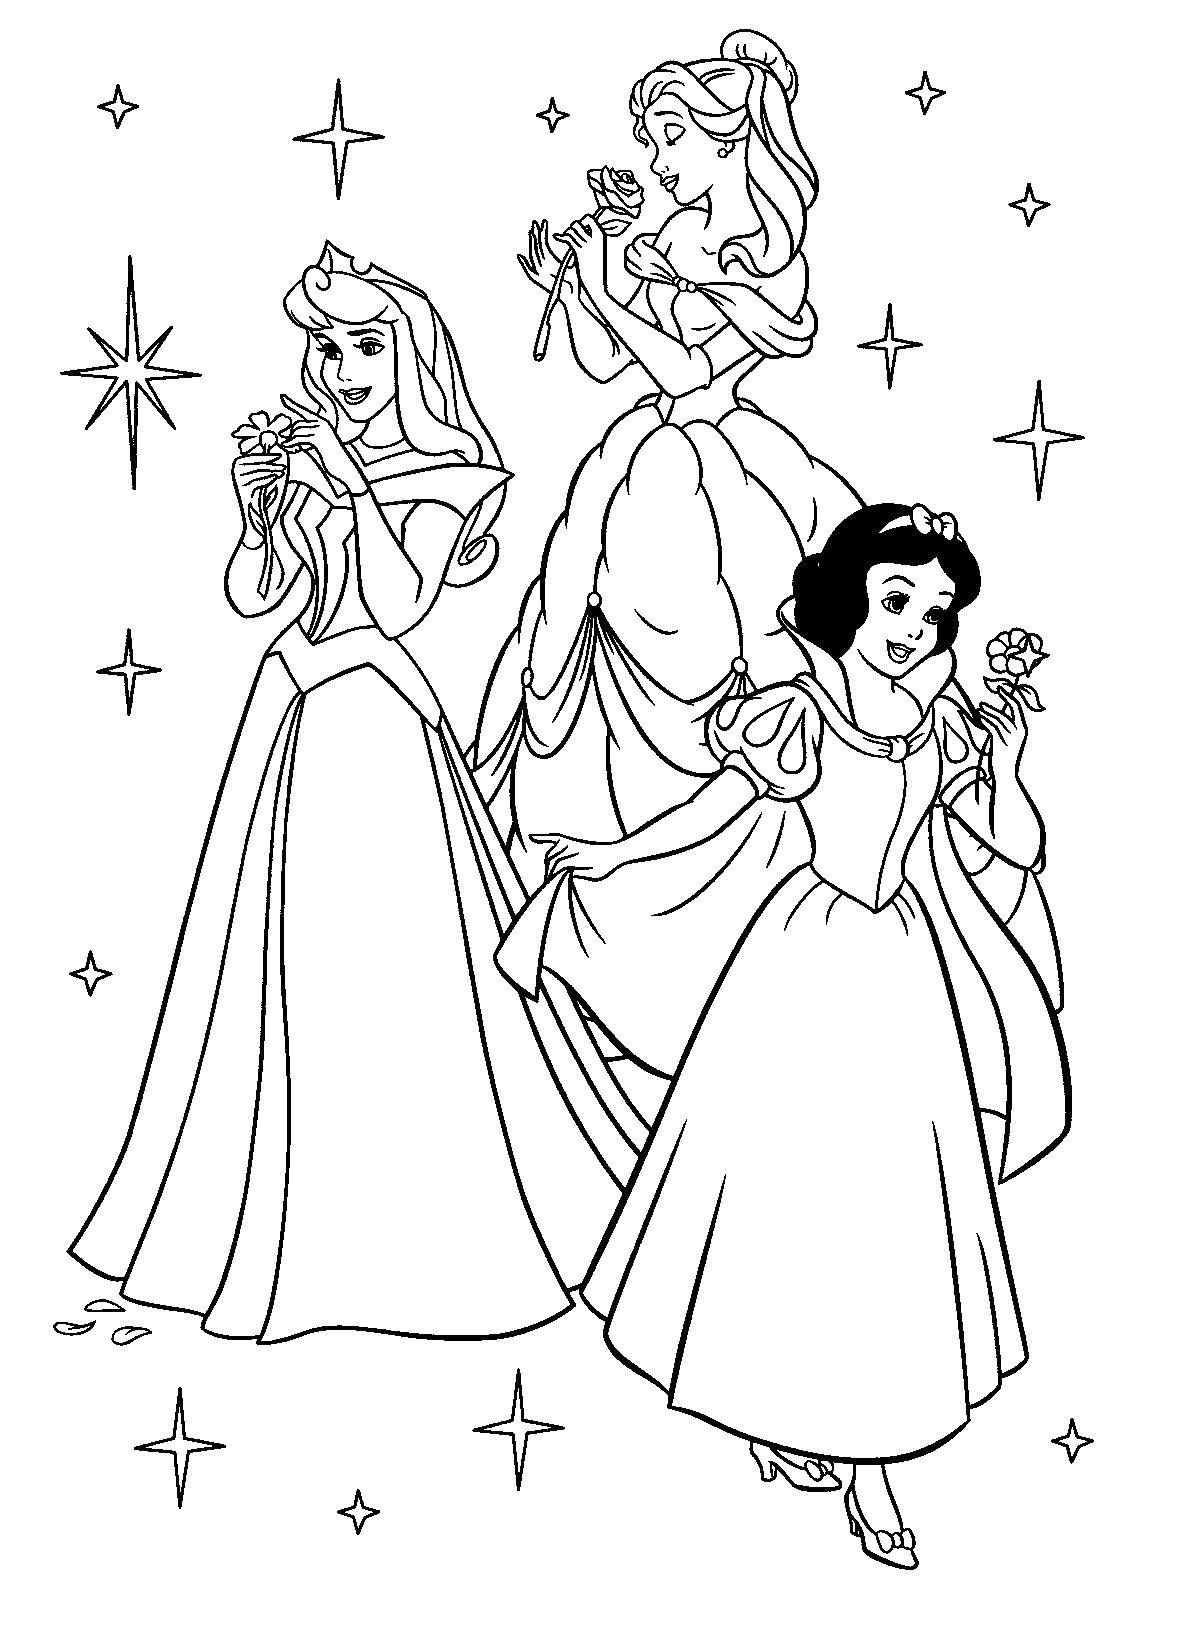 Название: Раскраска Три диснеевские принцессы. Категория: Диснеевские раскраски. Теги: принцессы, Дисней.